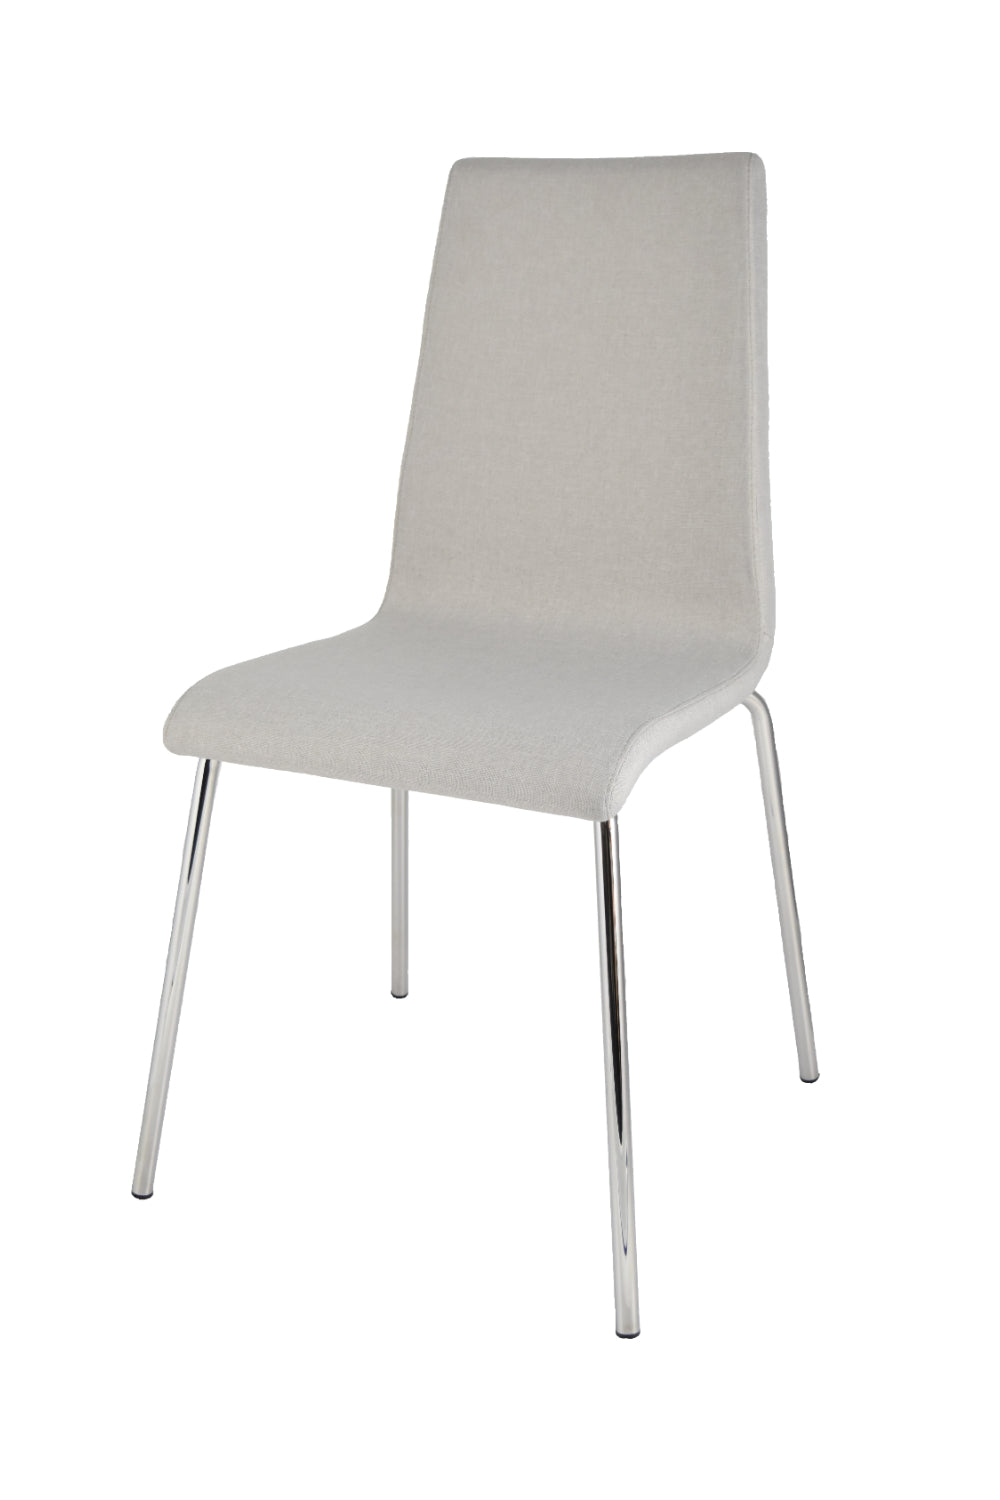 Set sedie Lisbona con scocca in multistrato imbottita e rivestita in tessuto grigio perla e basamento in tubo d'acciaio